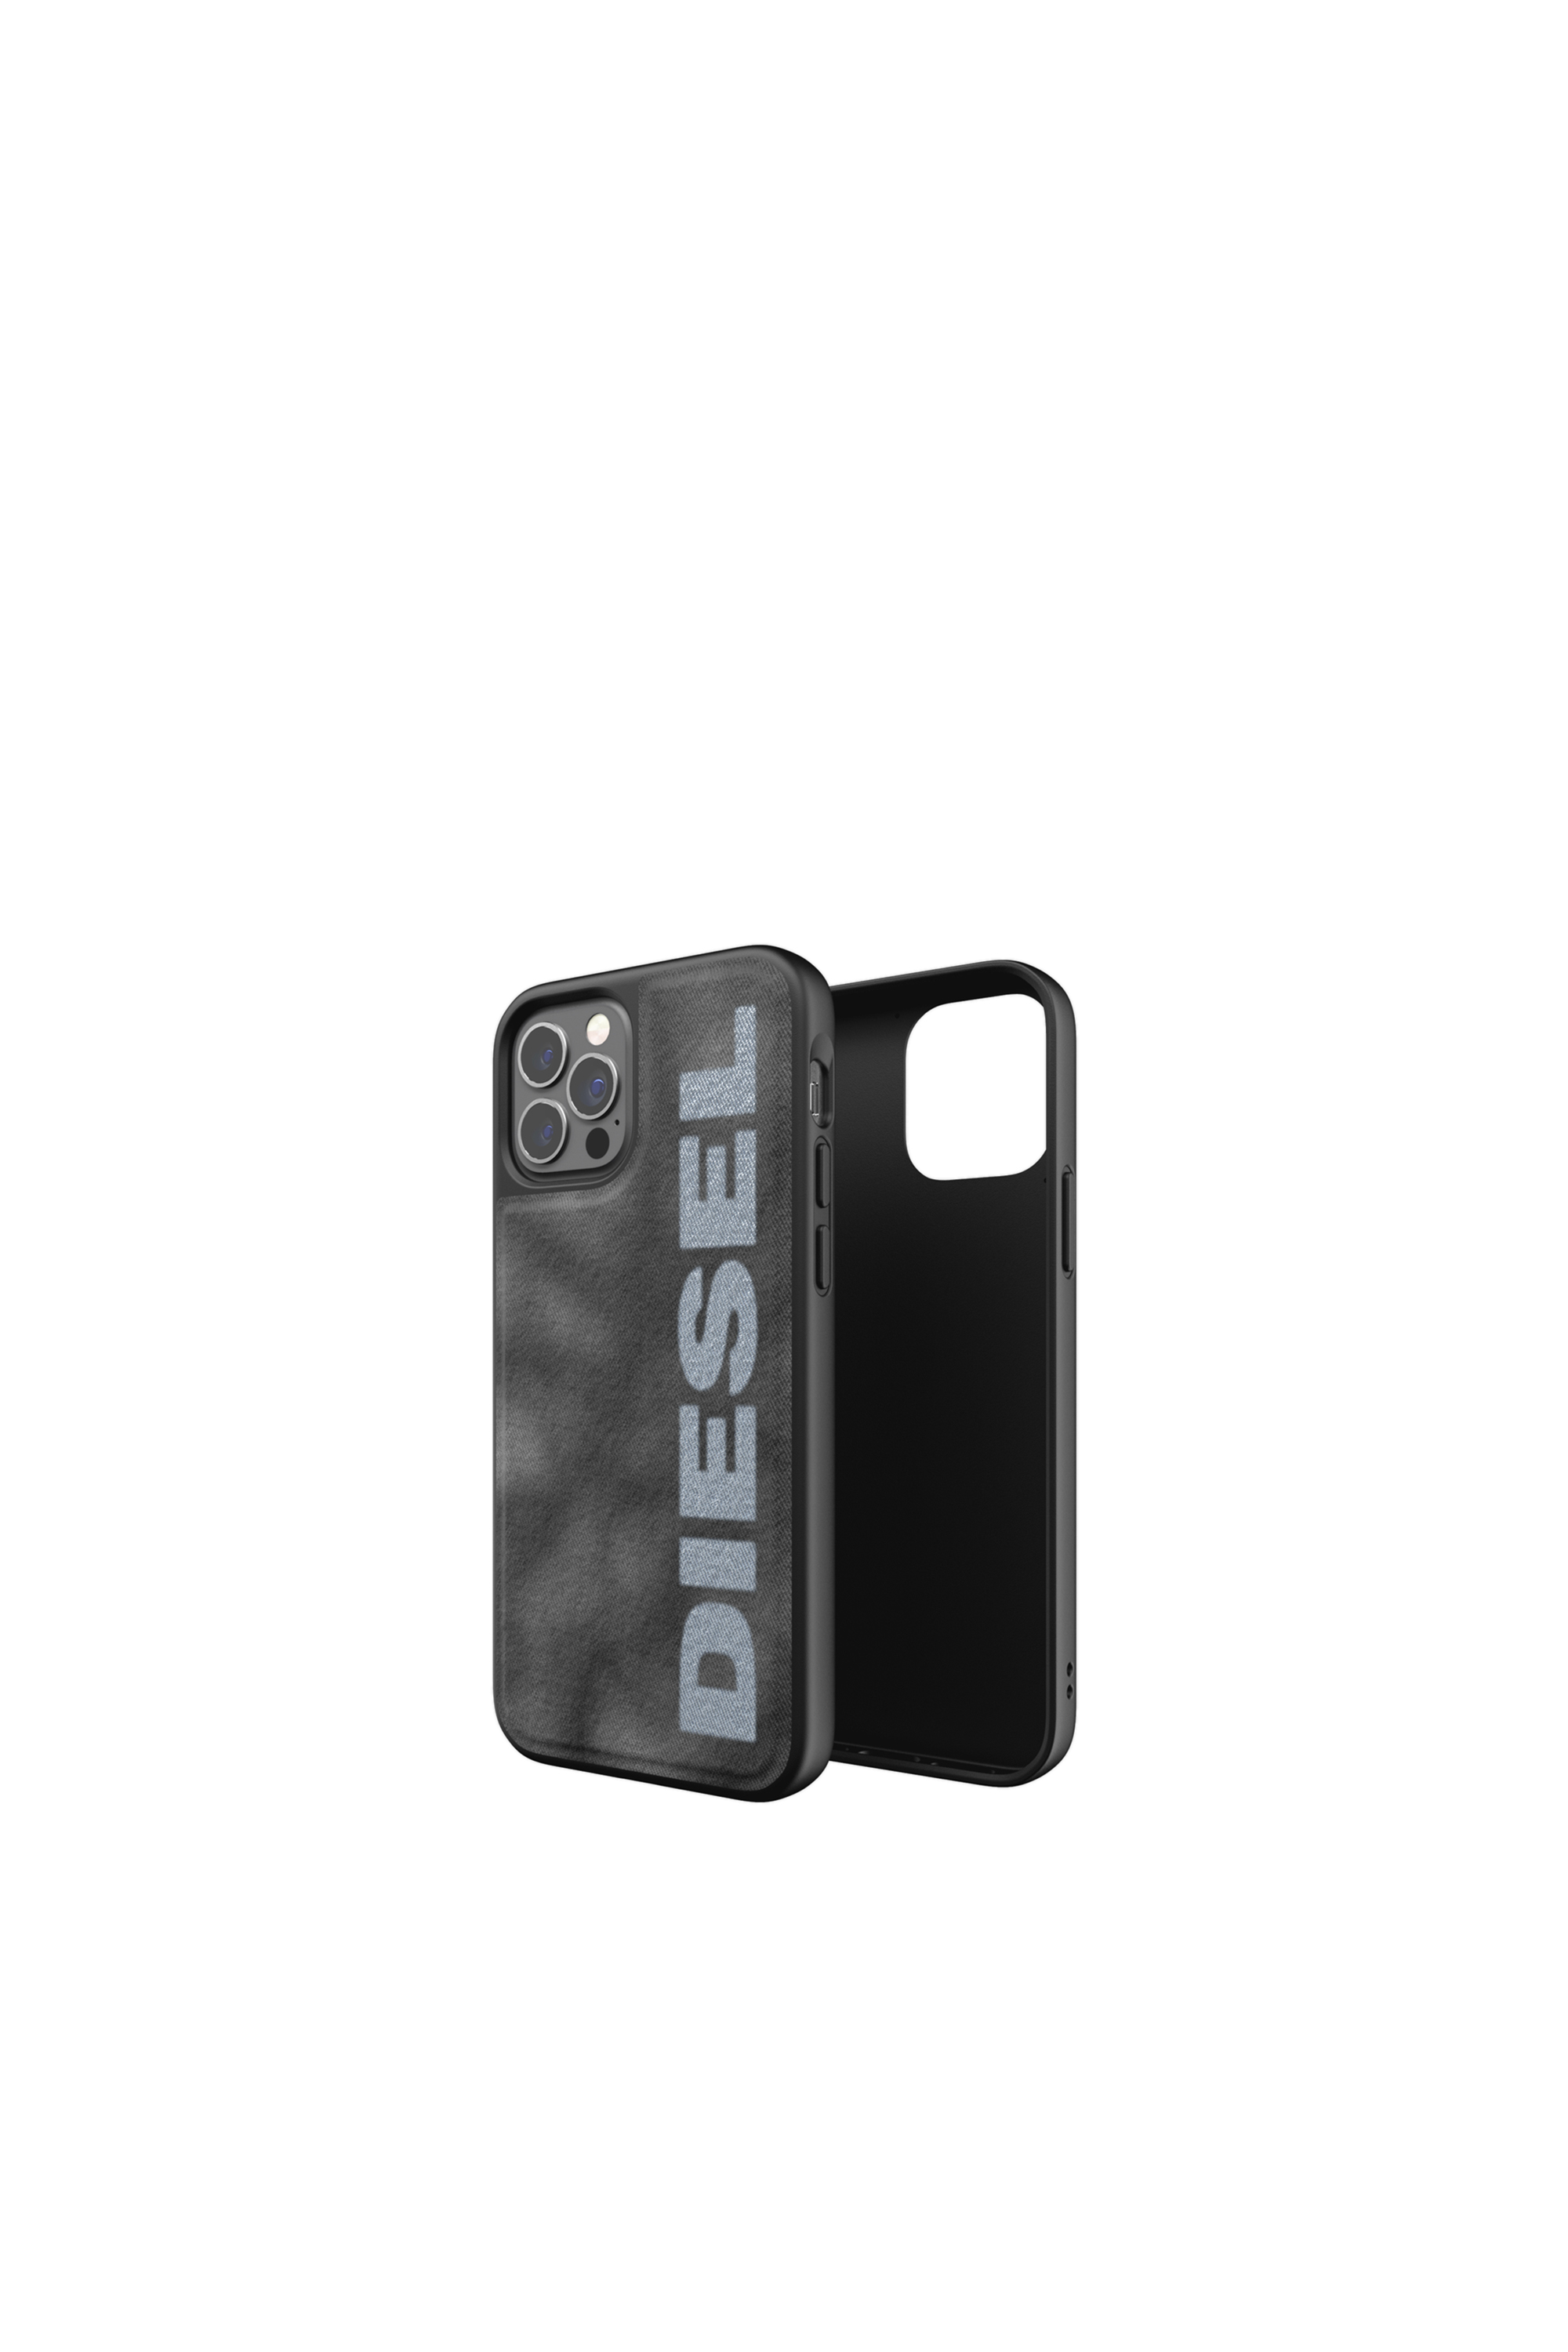 Diesel - 44297   STANDARD CASES, Black/Grey - Image 1